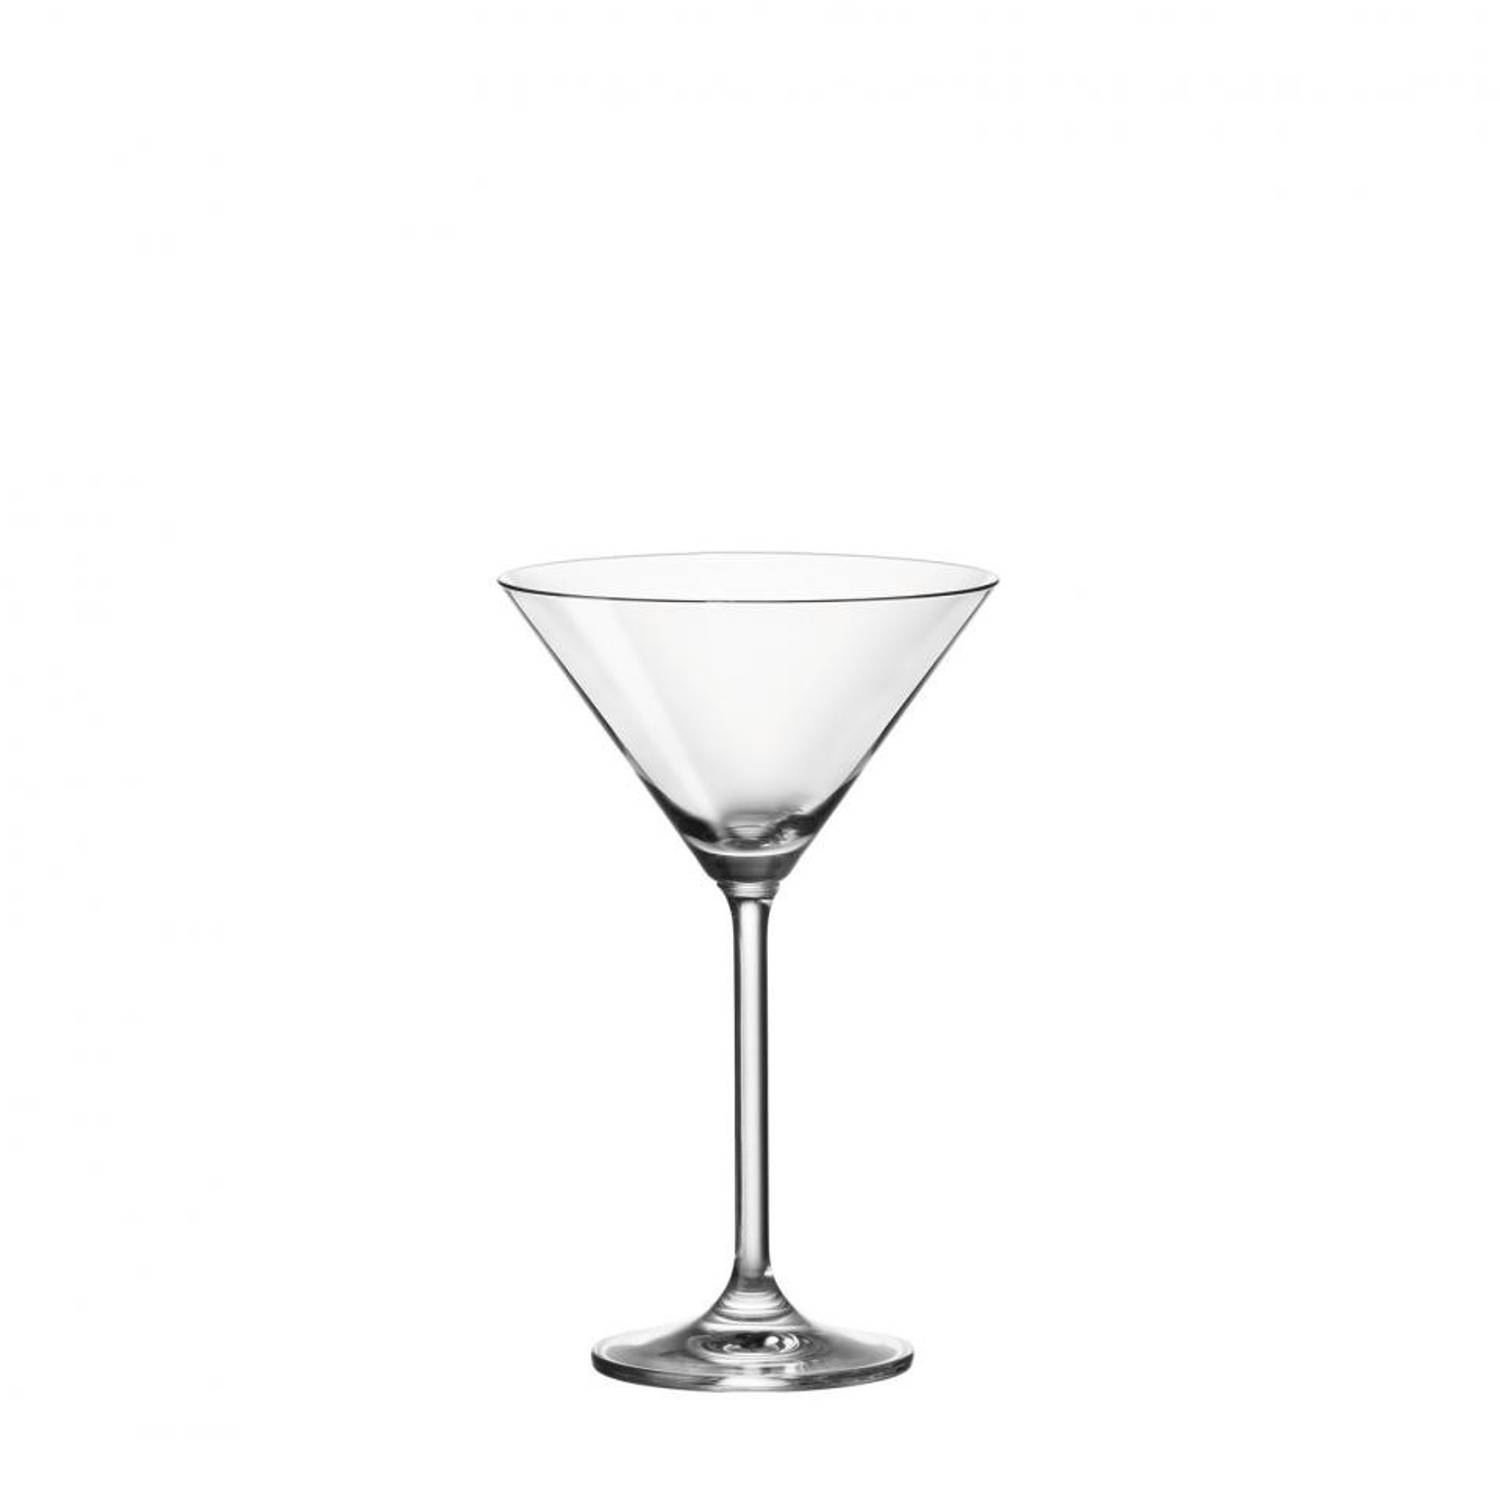 Leonardo Daily cocktailglas - 6 stuks